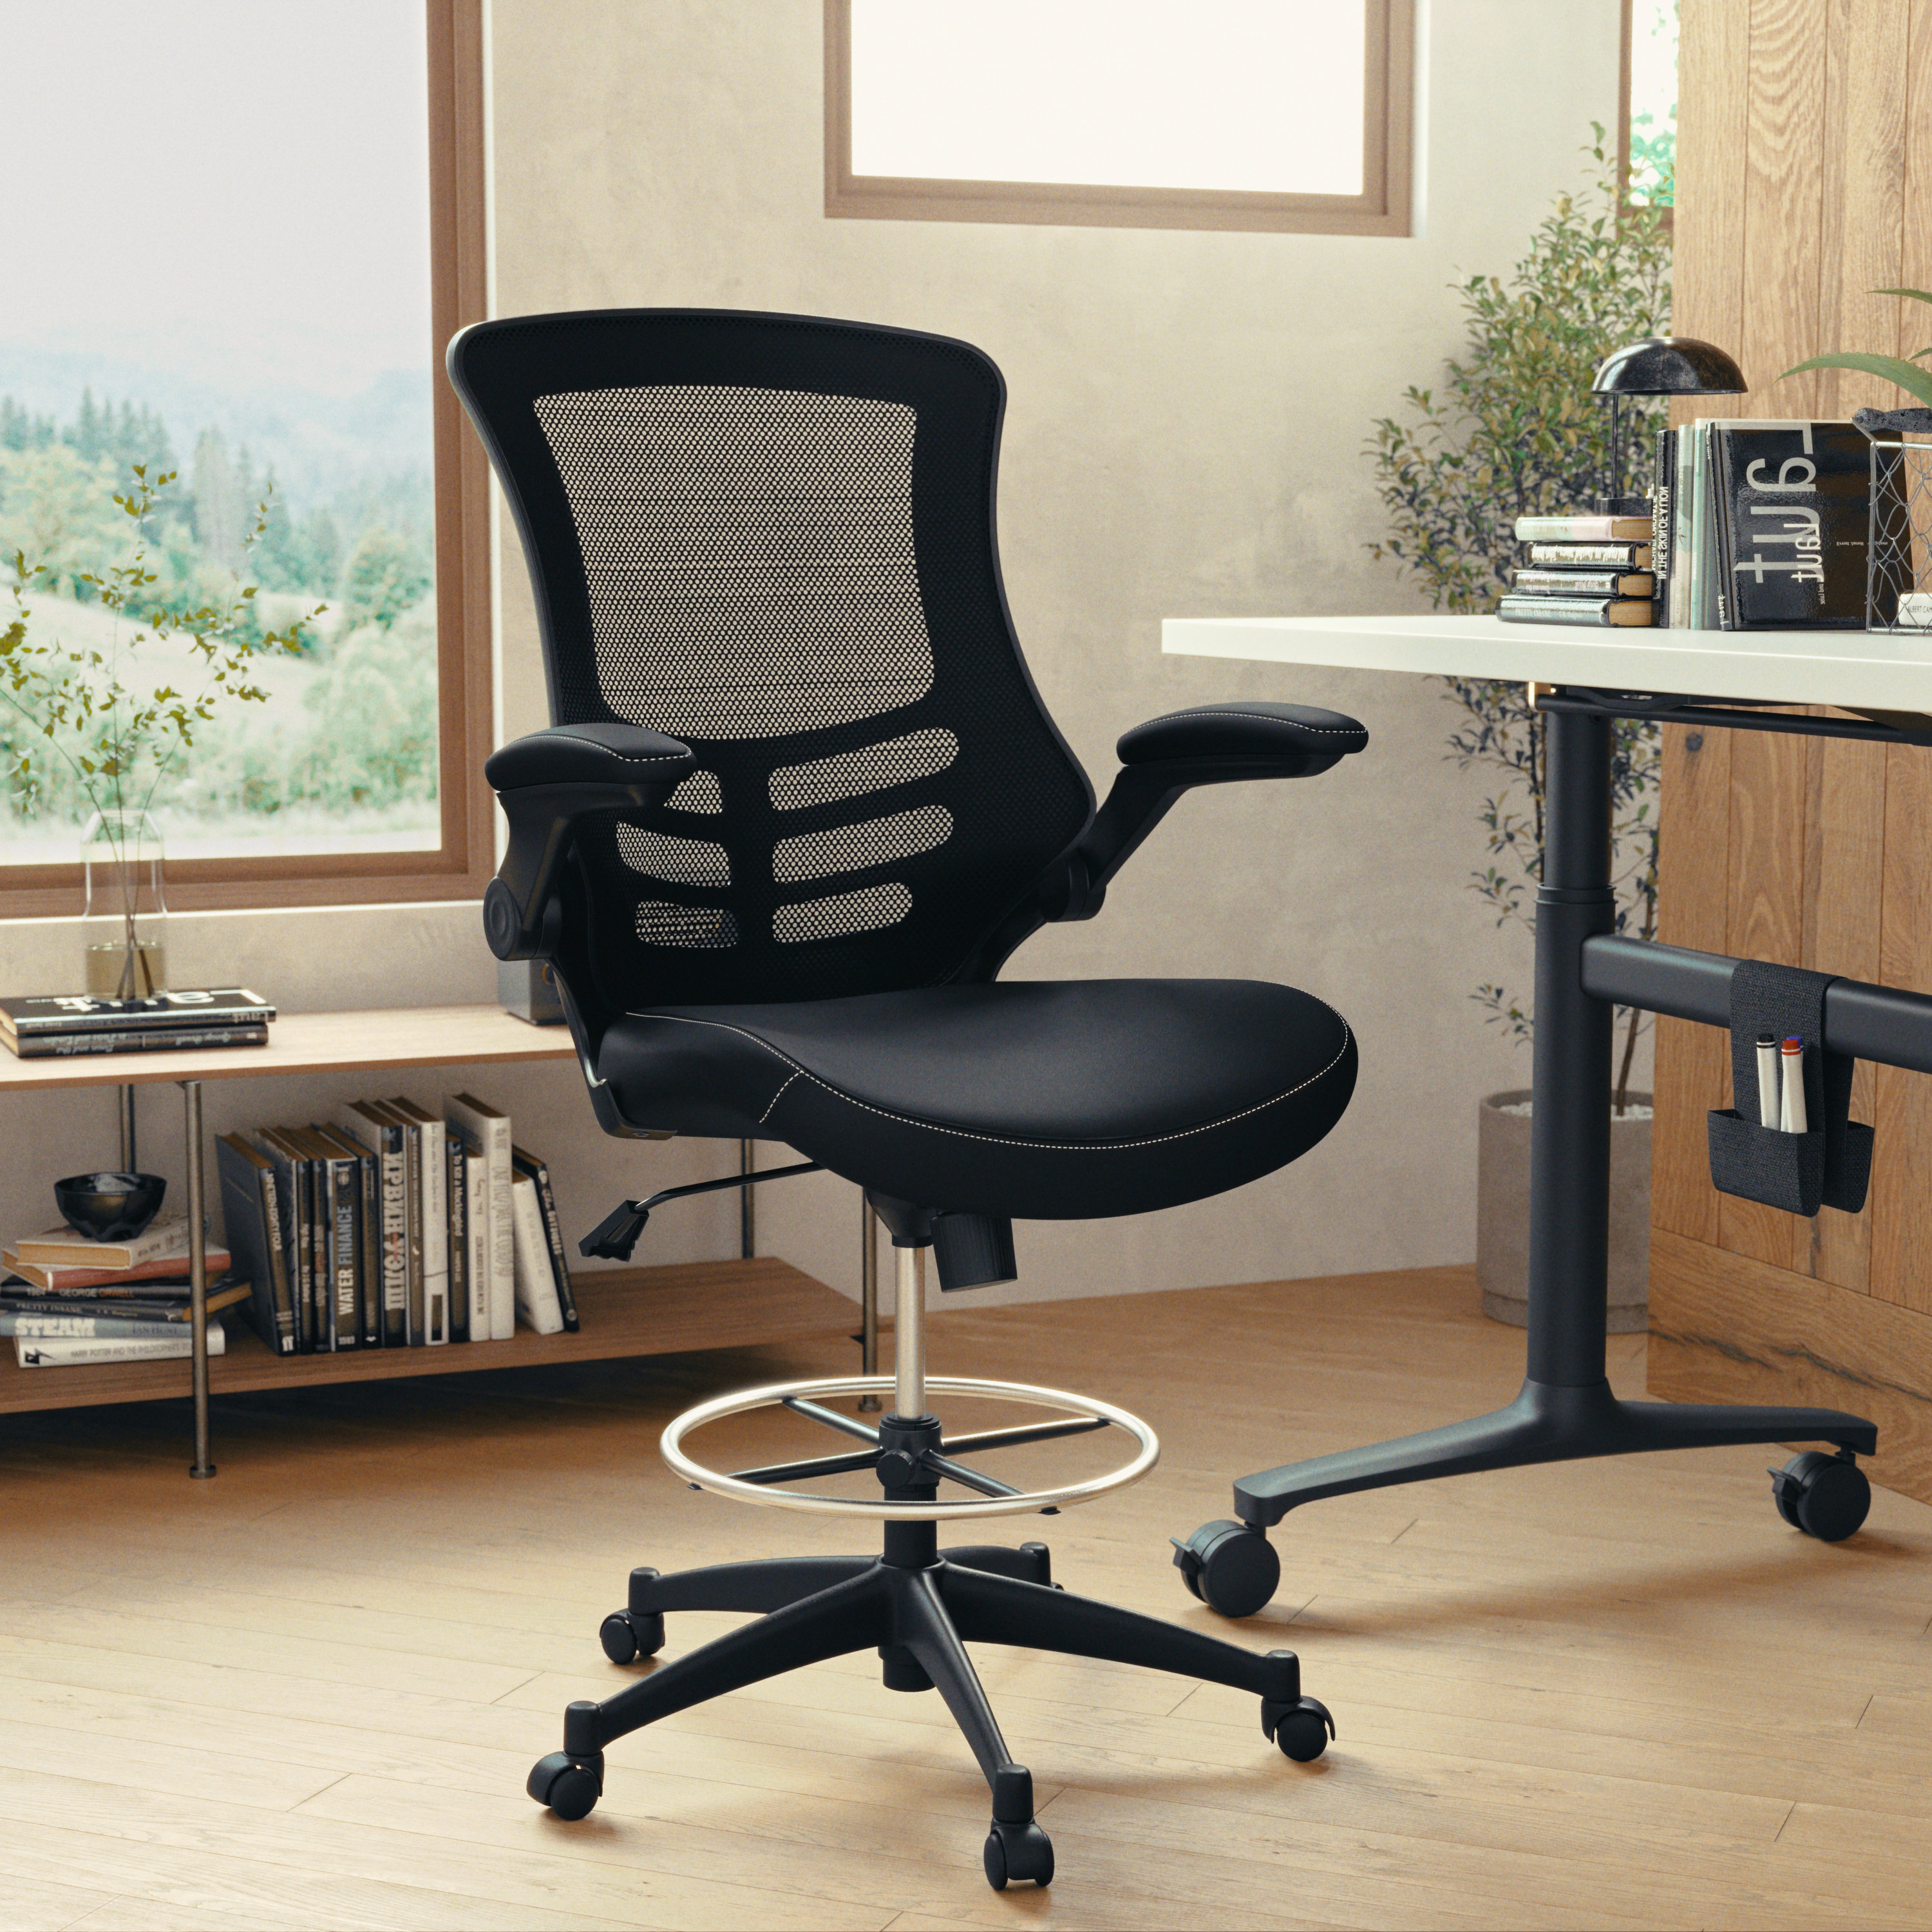 Un repose-pieds ajustable pour un bureau de travail plus ergonomique!